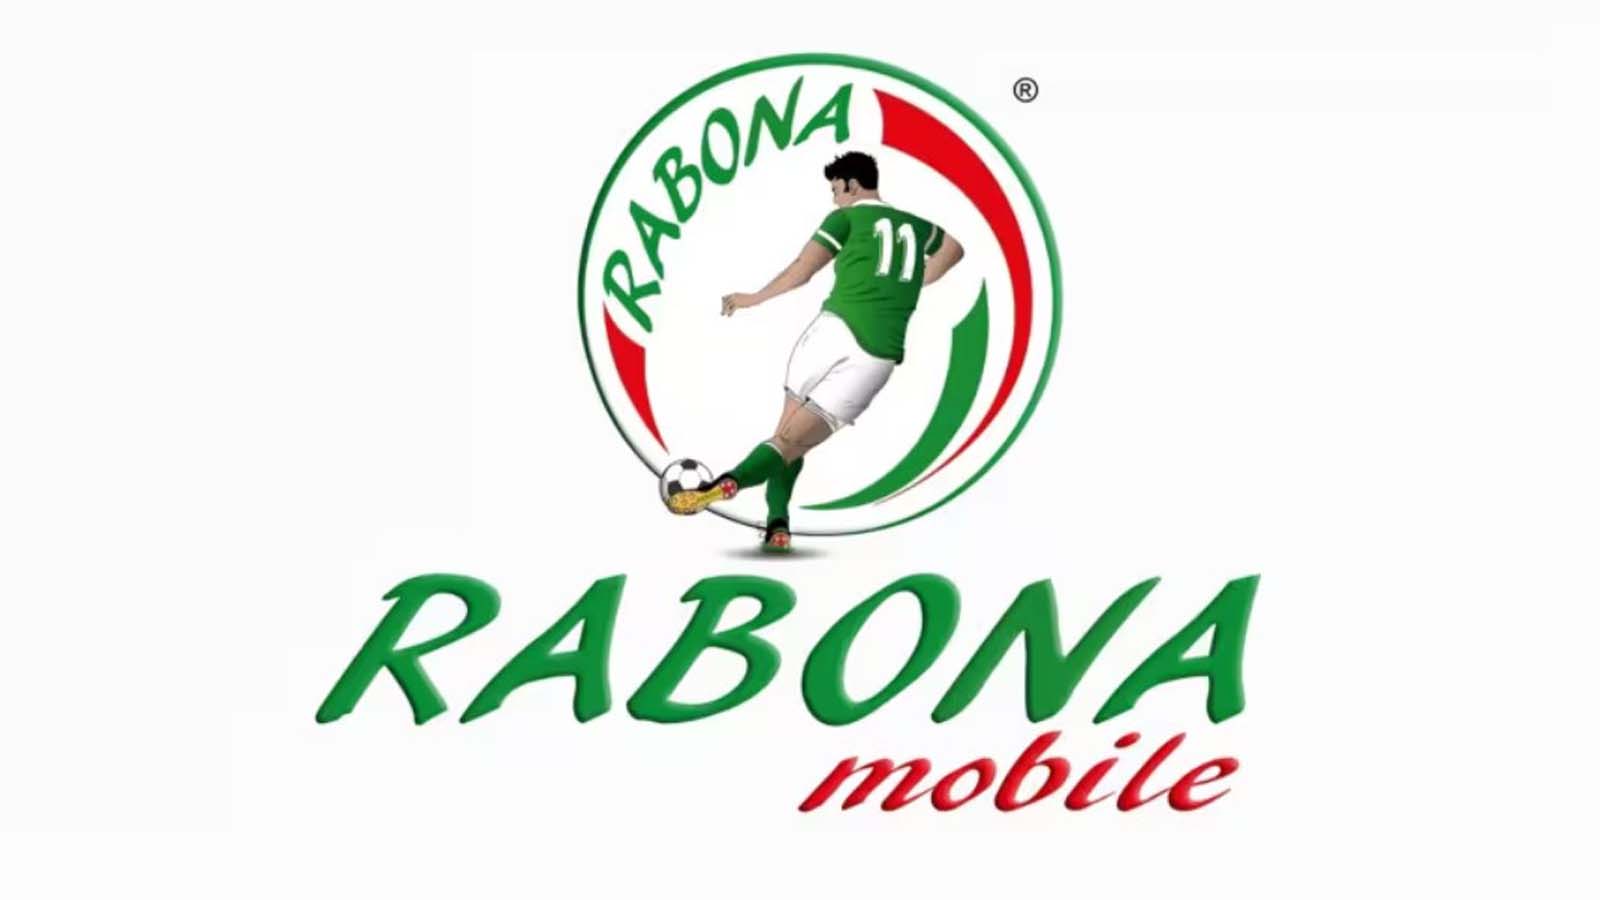 Le tariffe e i vantaggi dei nuovi servizi internazionali di Rabona Mobile